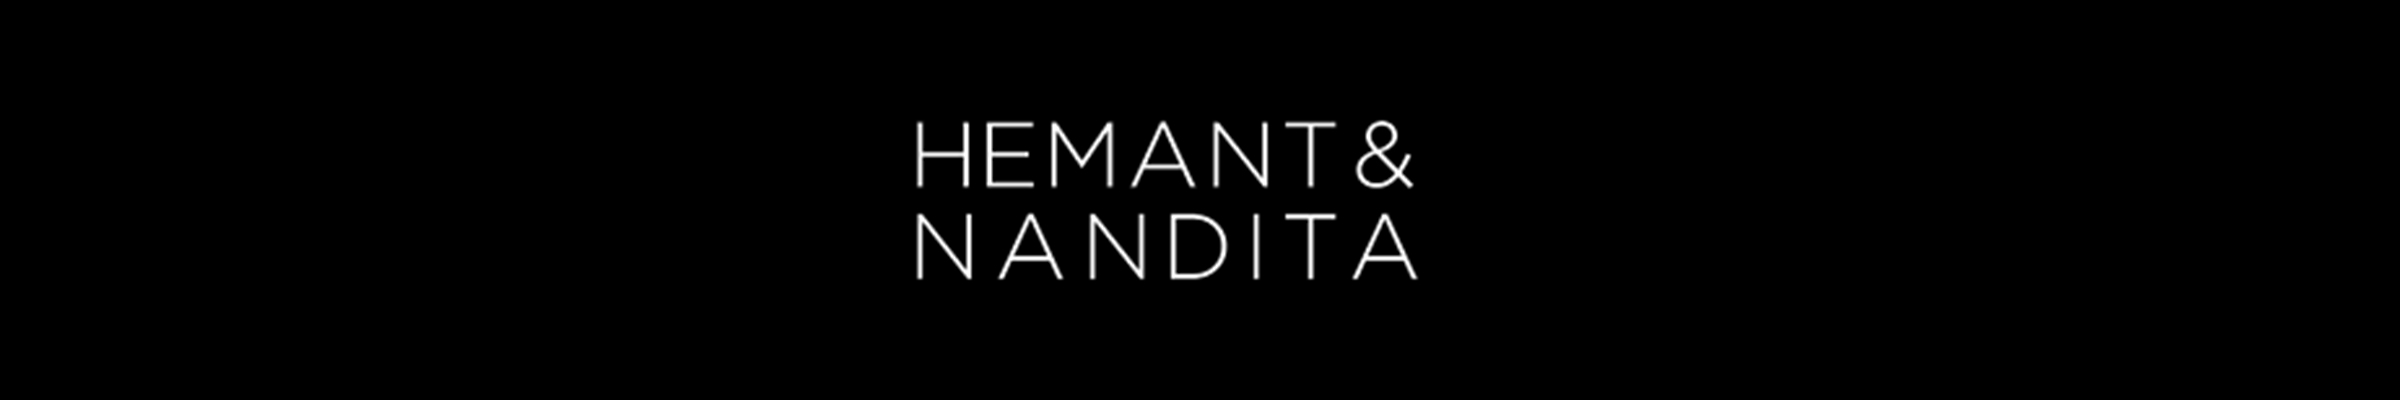 hemant-and-nandita-banner